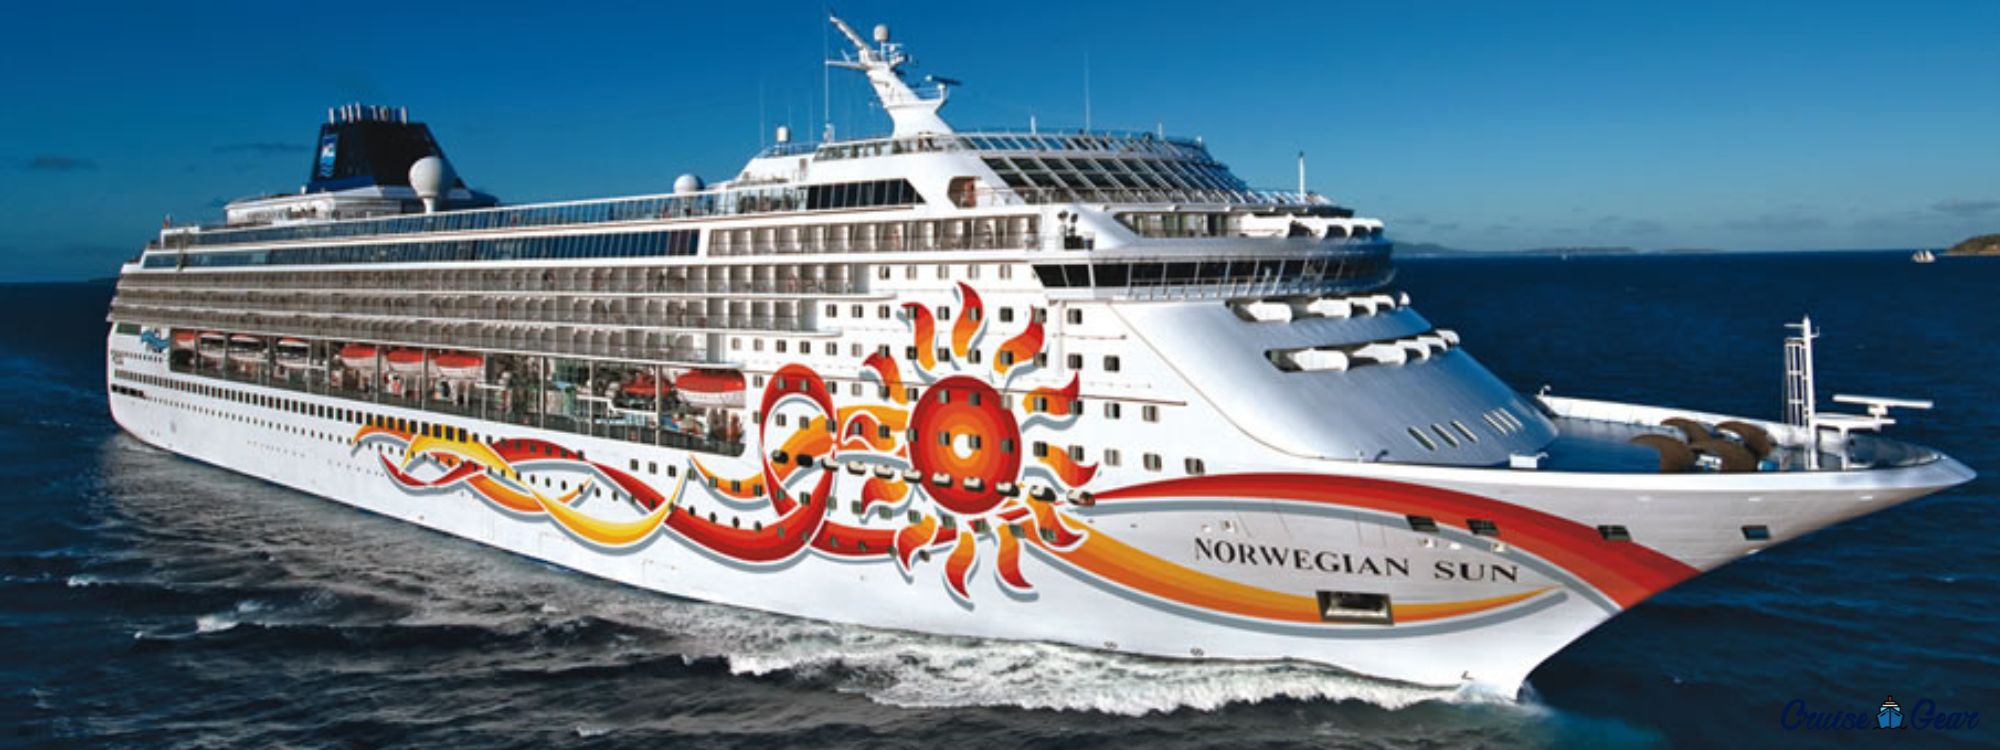 norwegian sun cruise ship reviews